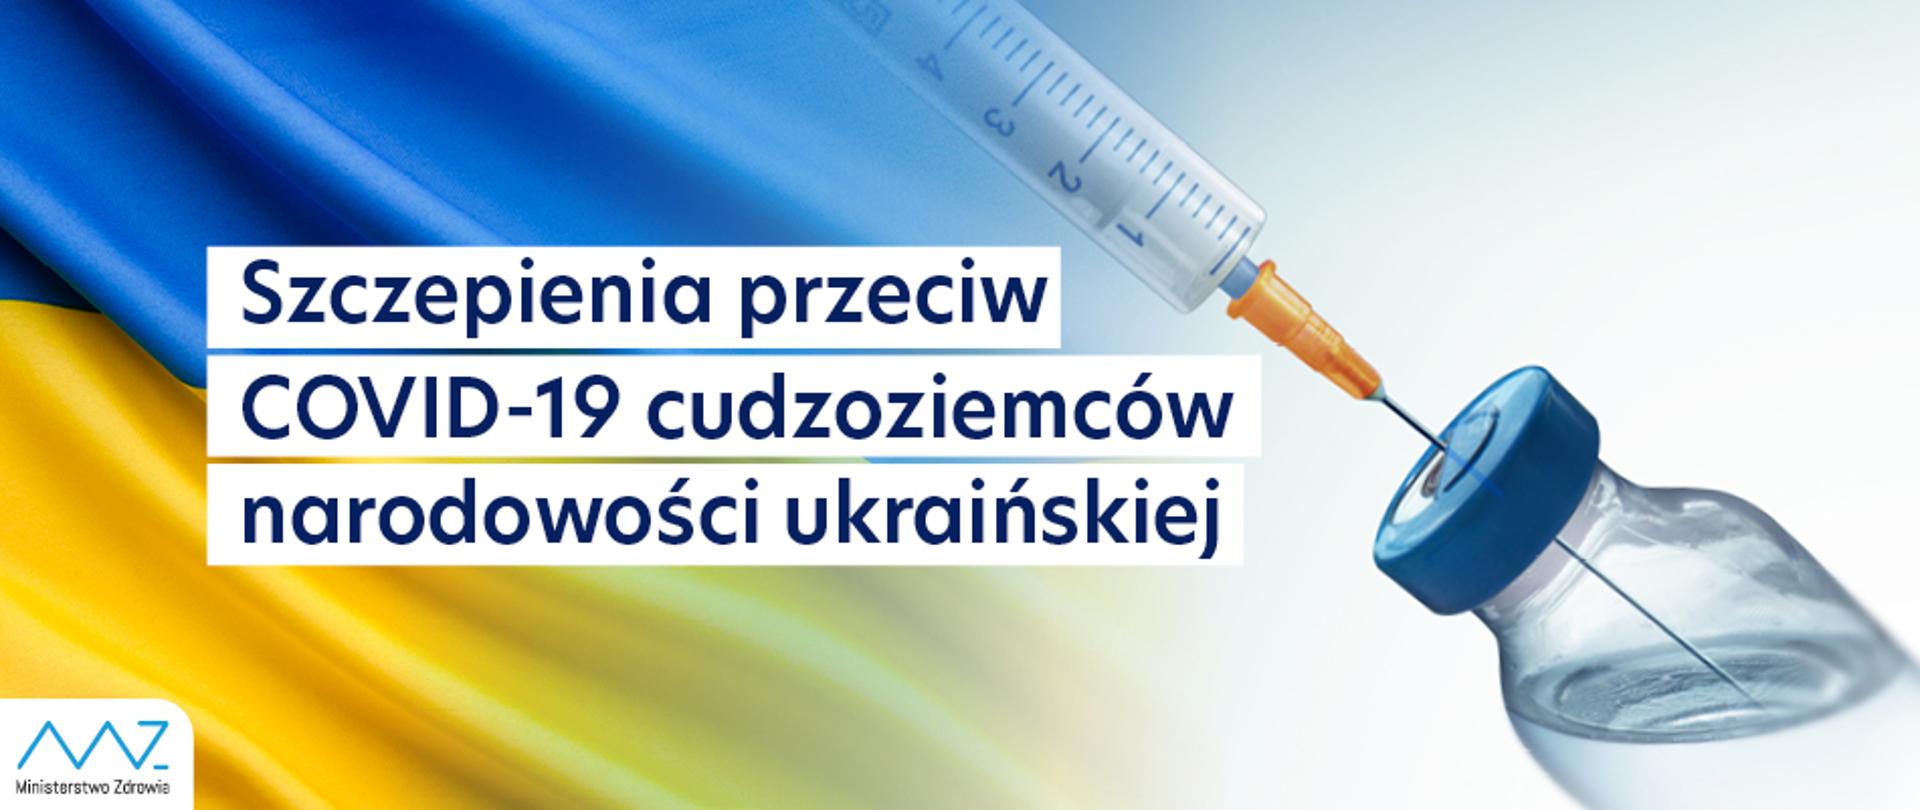 możliwość szczepienia cudzoziemców narodowości ukraińskiej w ramach Narodowego Programu Szczepień przeciw Covid-19.